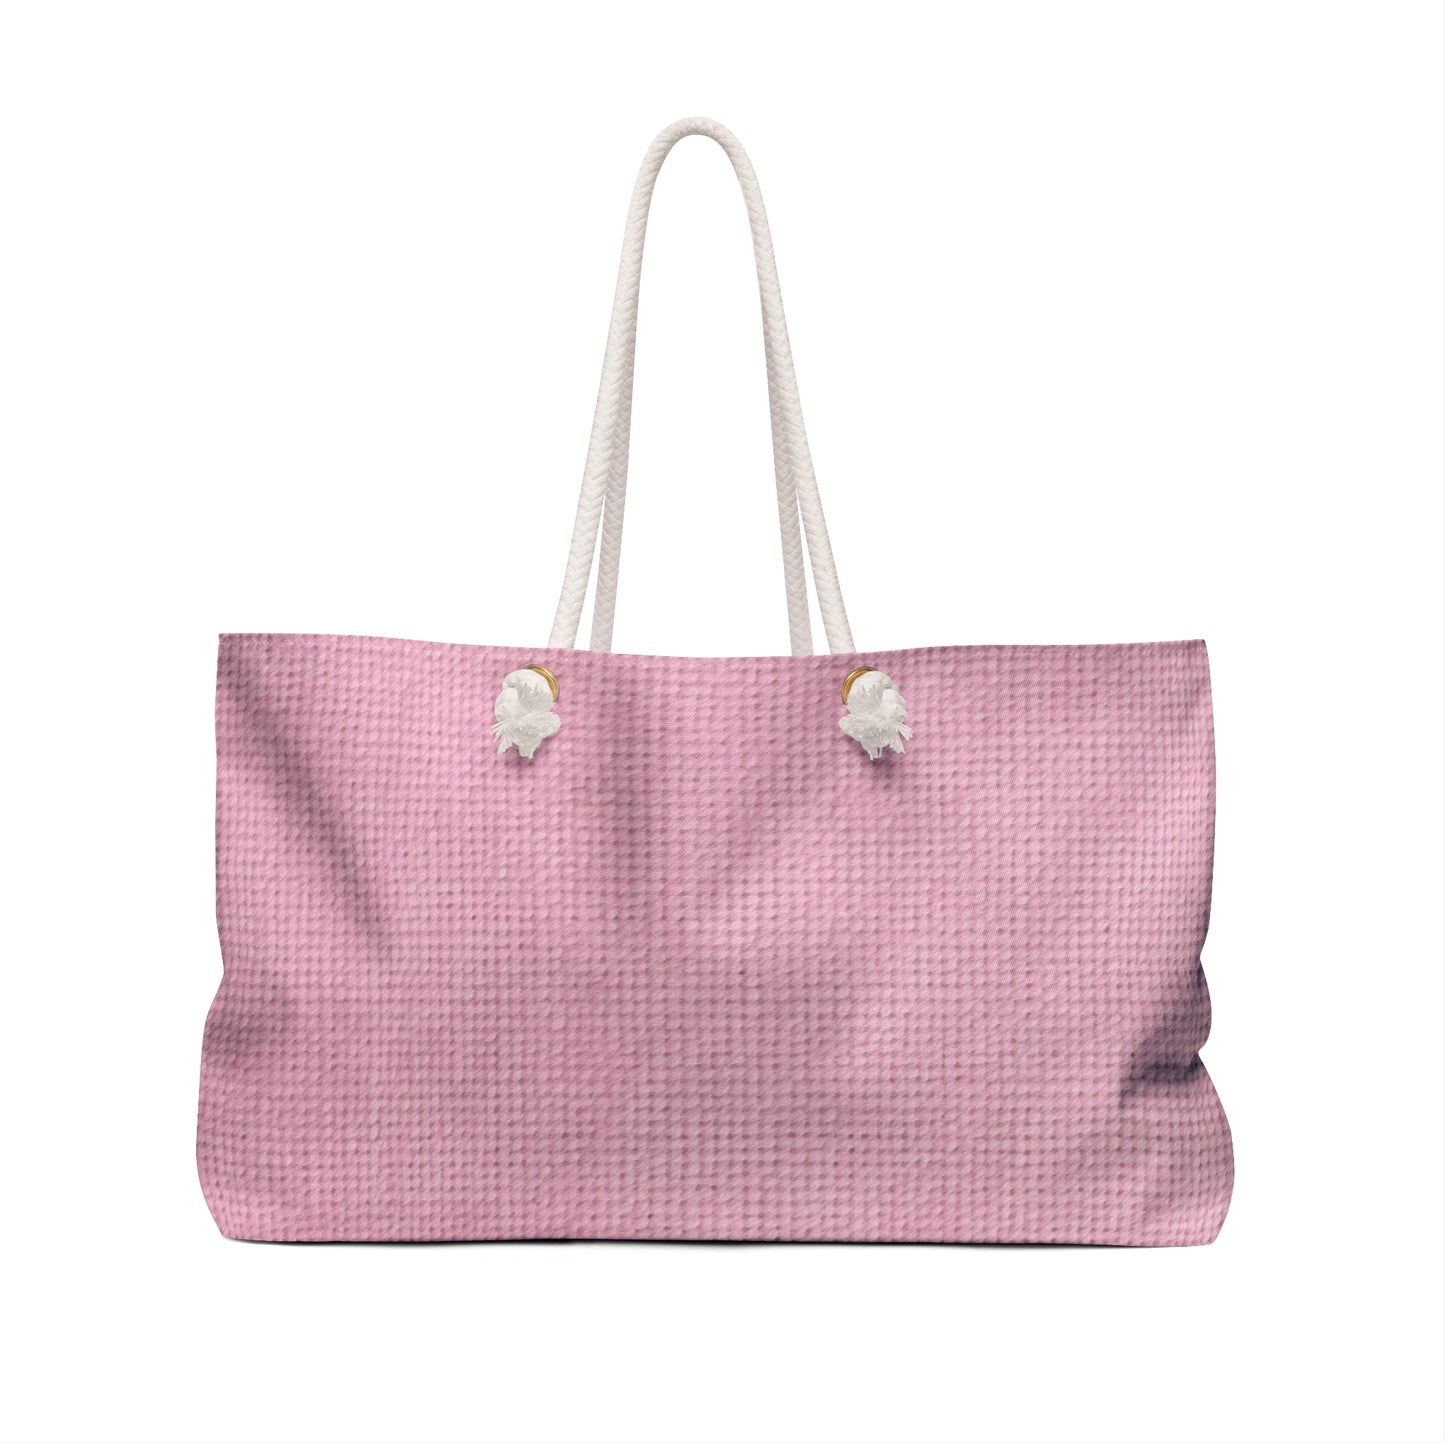 Blushing Garment Dye Pink: Denim-Inspired, Soft-Toned Fabric - Weekender Bag